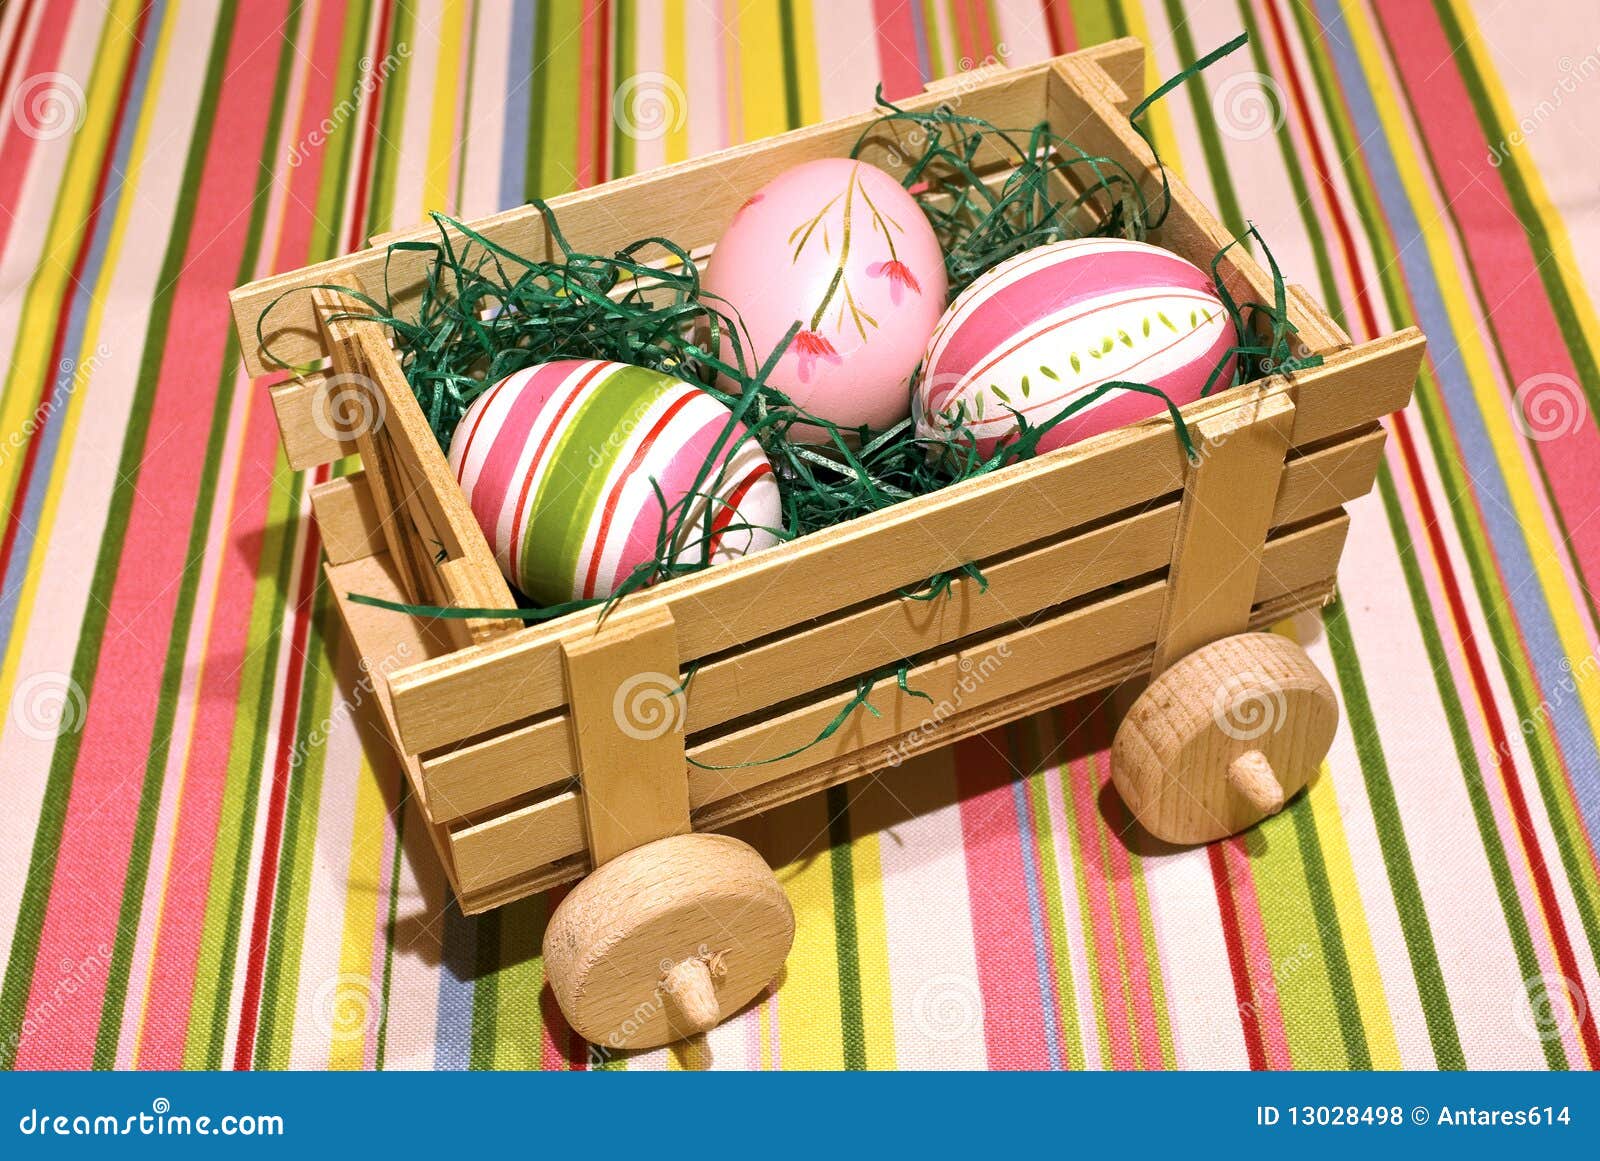 Eggs Anlieferung. Ostereier auf einem hölzernen Spielzeug Chariot über farbigem Hintergrund